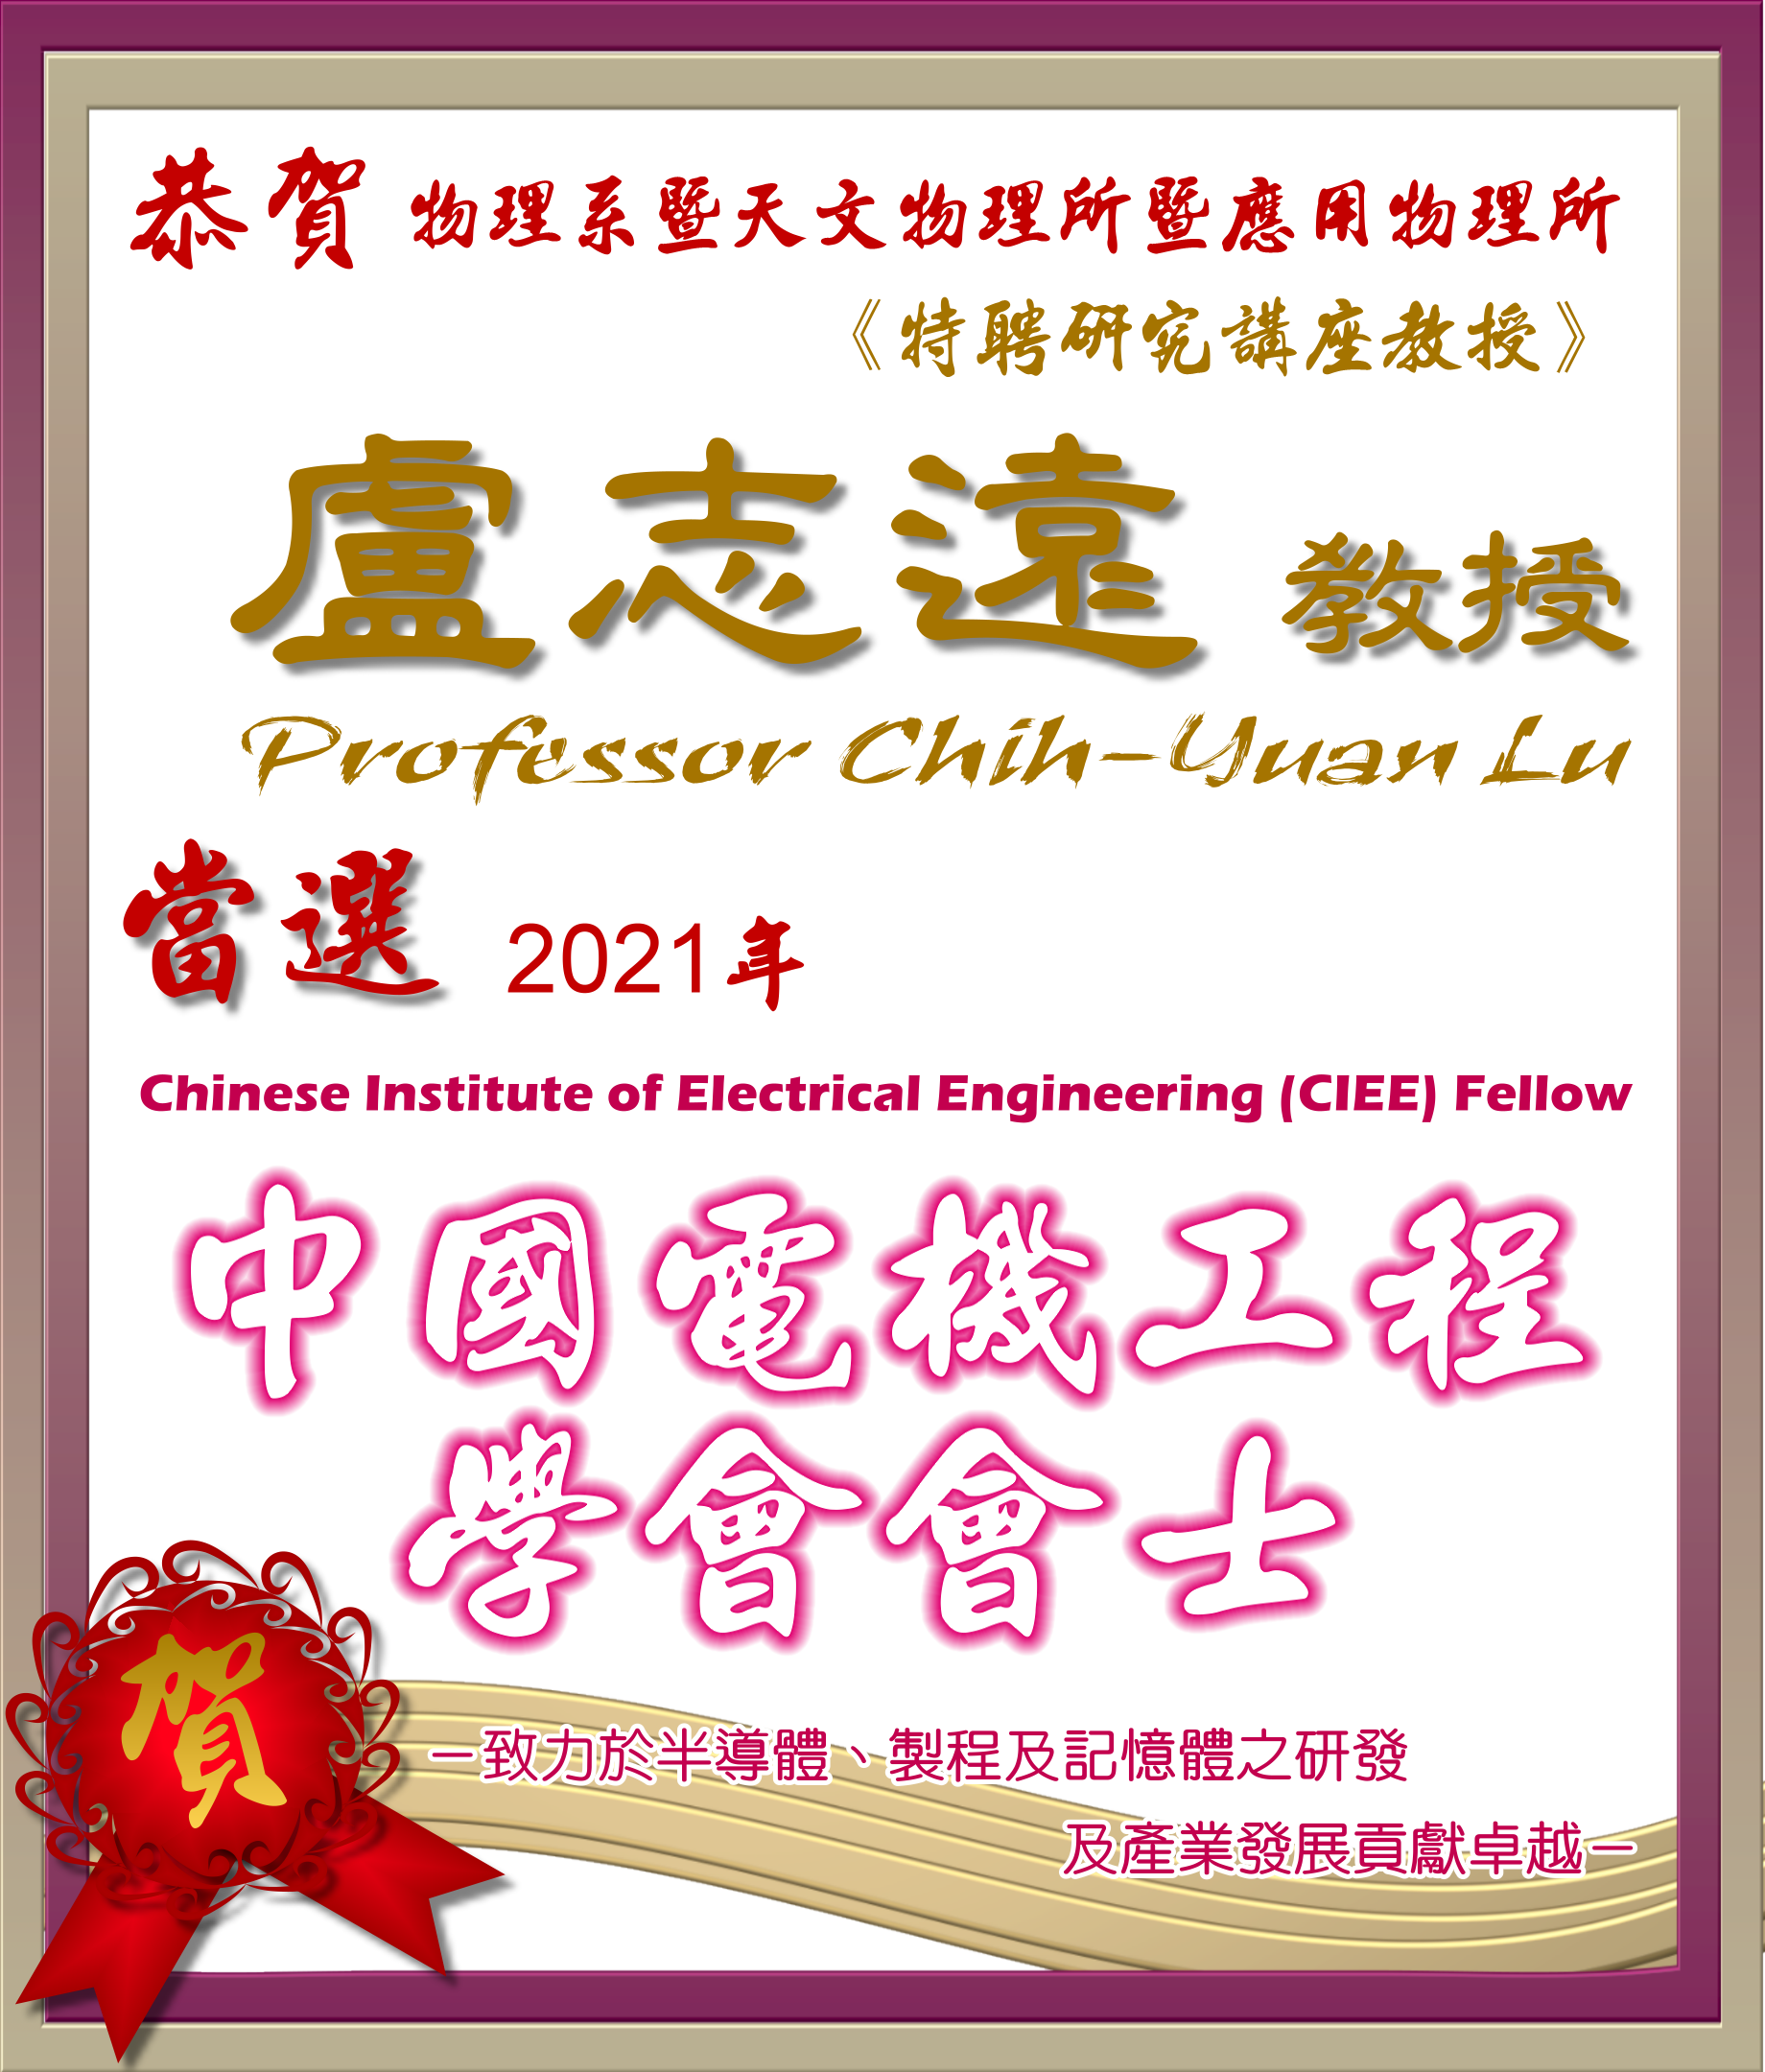 《賀》本系特聘研究講座教授  盧志遠教授 Prof. Chih-Yuan Lu  當選2021年 《中國電機工程師學會會士》 (Chinese Institute of Electrical Engineering (CIEE) Fellow)